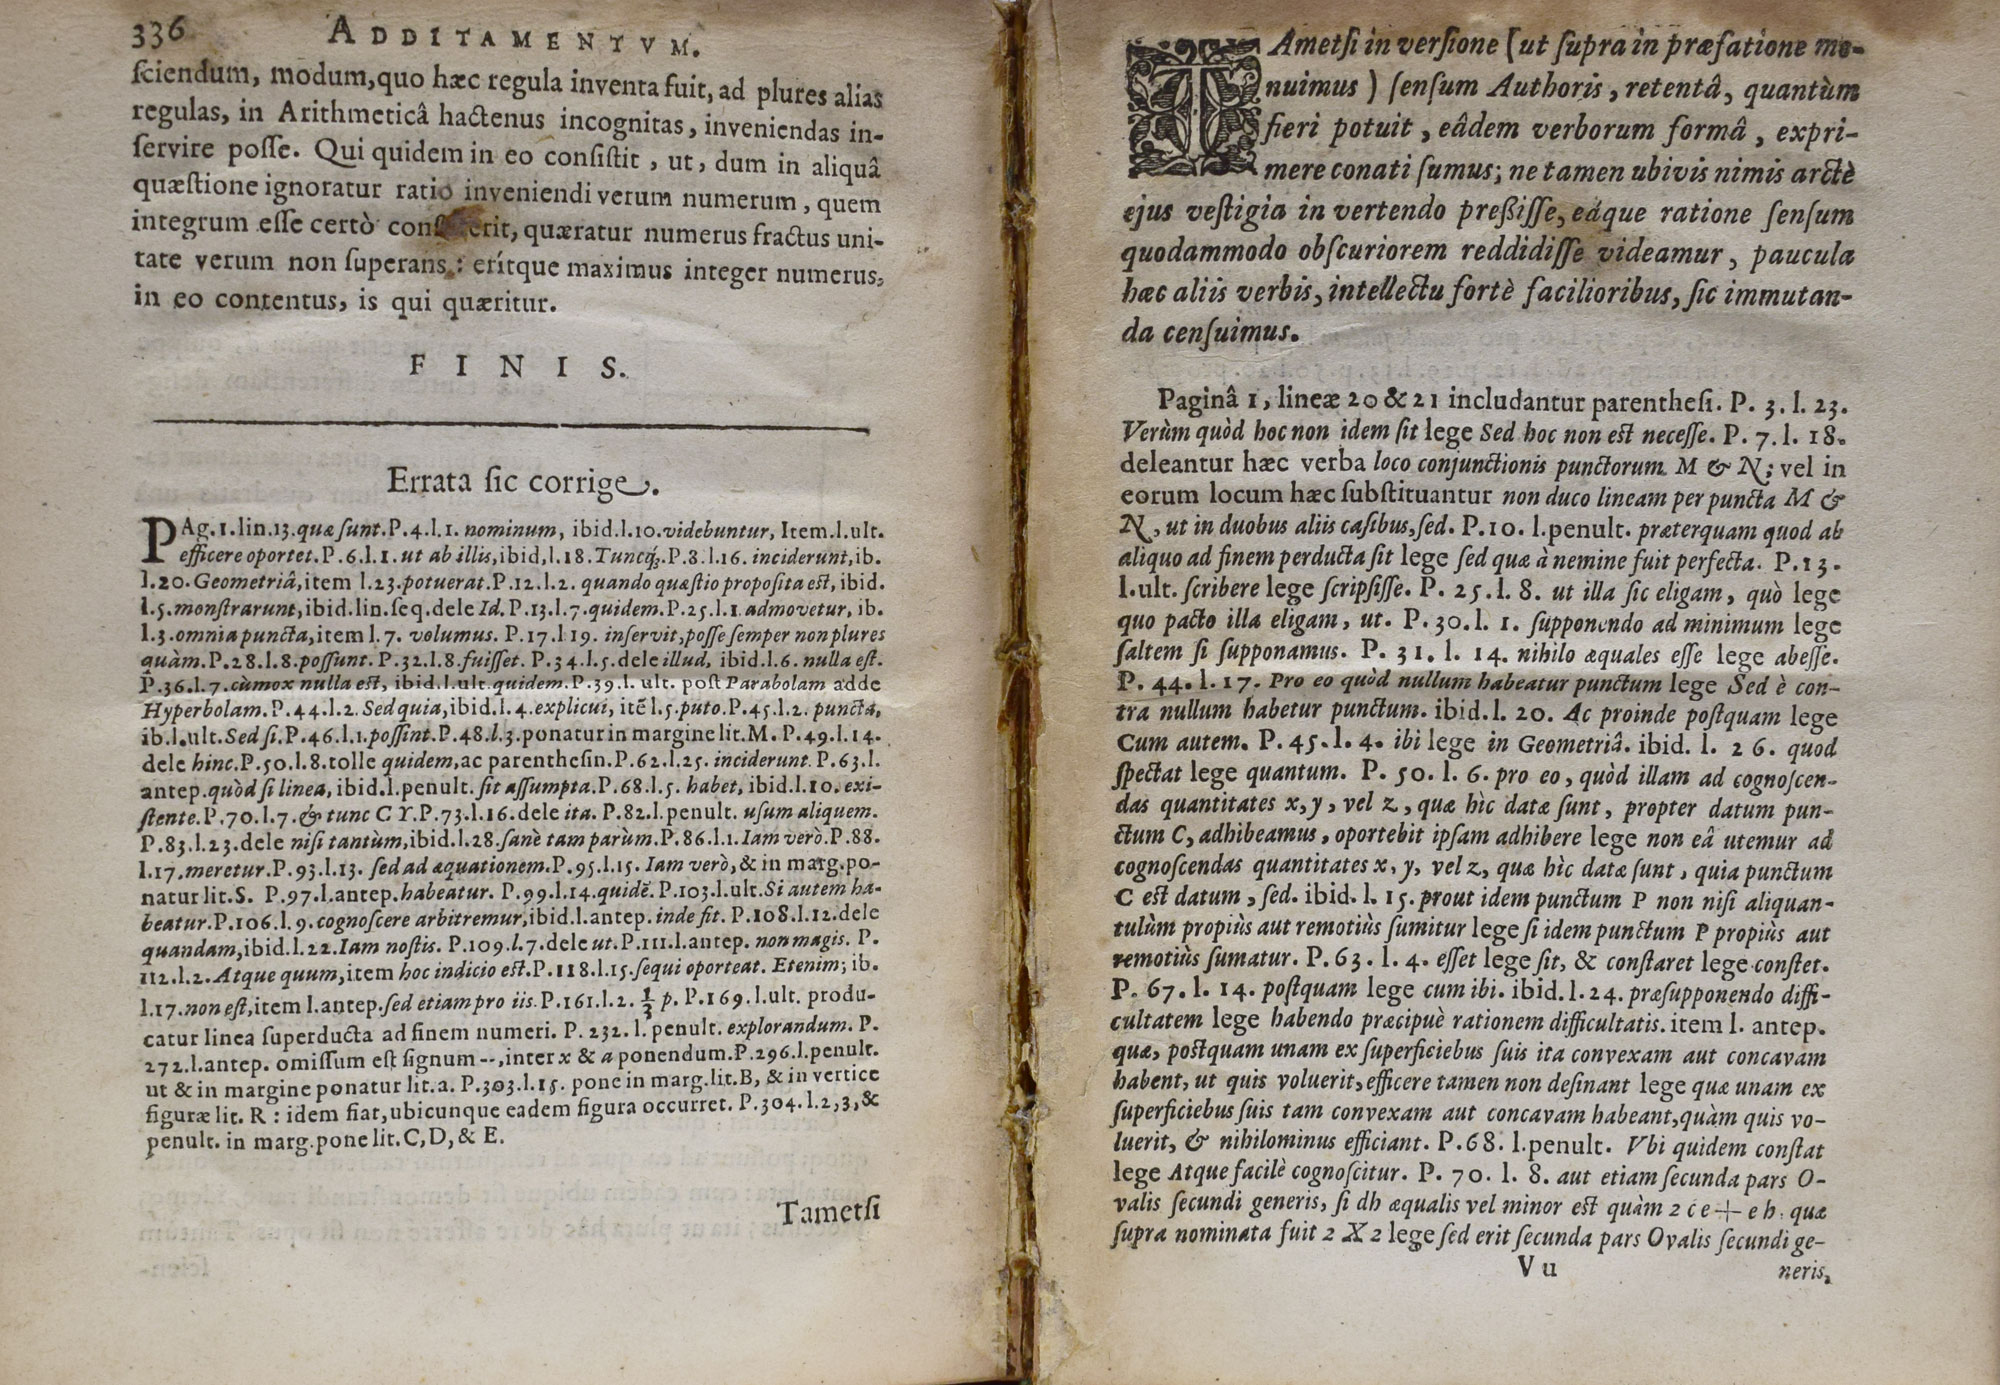 Geometria  Renato Des Cartes Anno 1637 Gallic Edita; Nunc Autem Cum Notis Florimondi de Beaune, In Curi Blaesensi Consiliarii Regii,.... Signed Richard Towneley